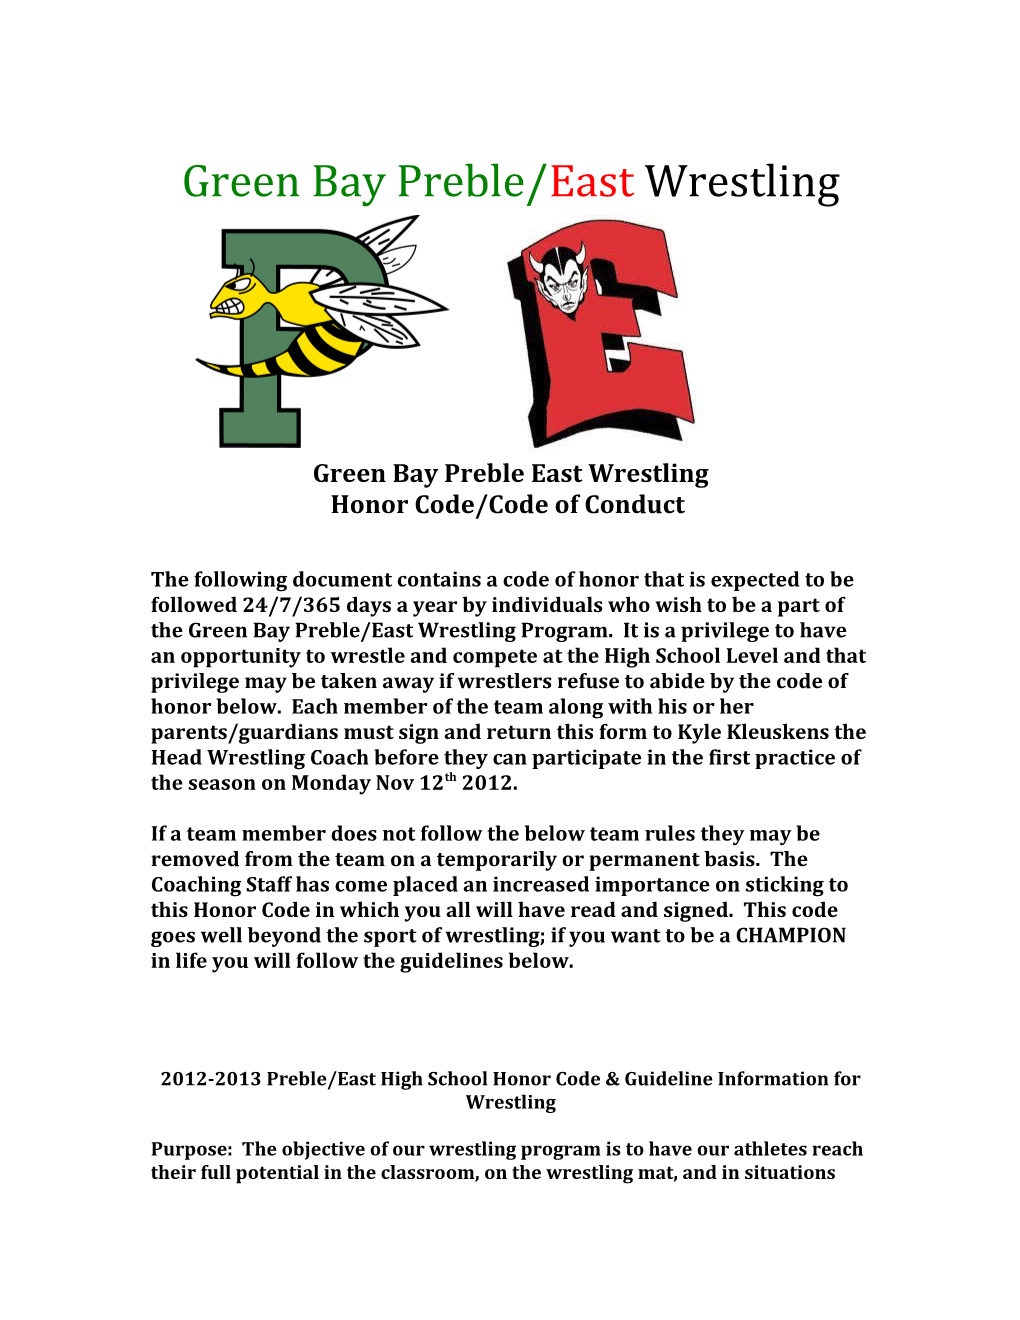 Green Bay Preble East Wrestling